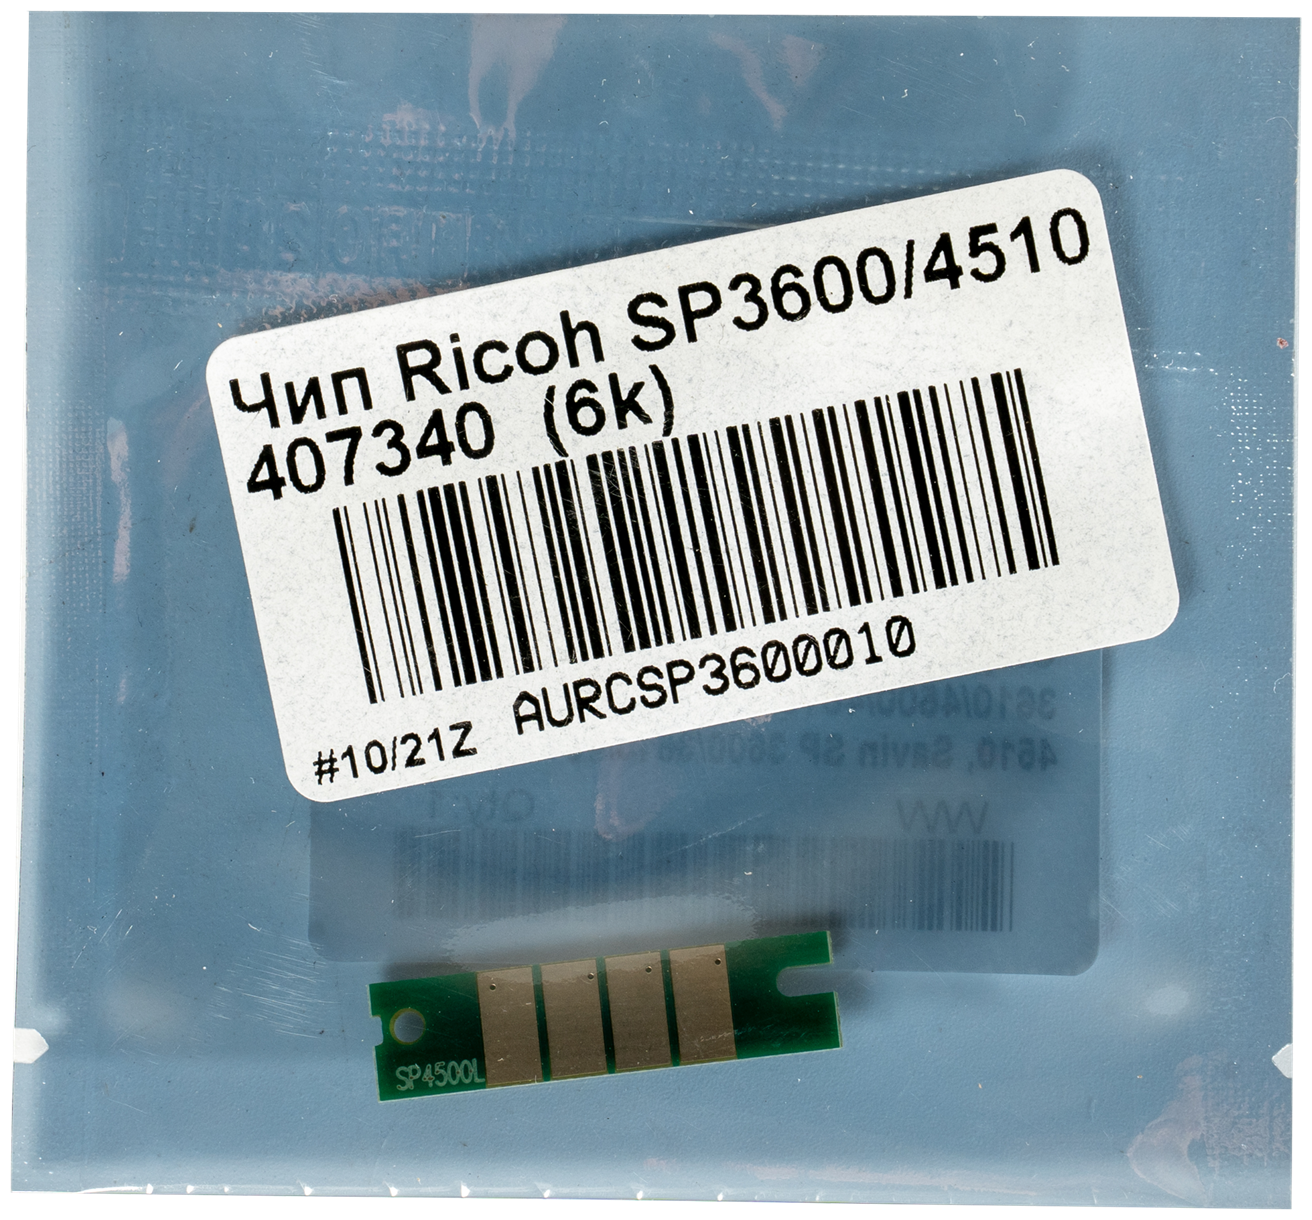 Чип TONEX SP4500E (407340) для Ricoh Aficio SP 3600, SP 4510 (Чёрный, 6000 стр.)